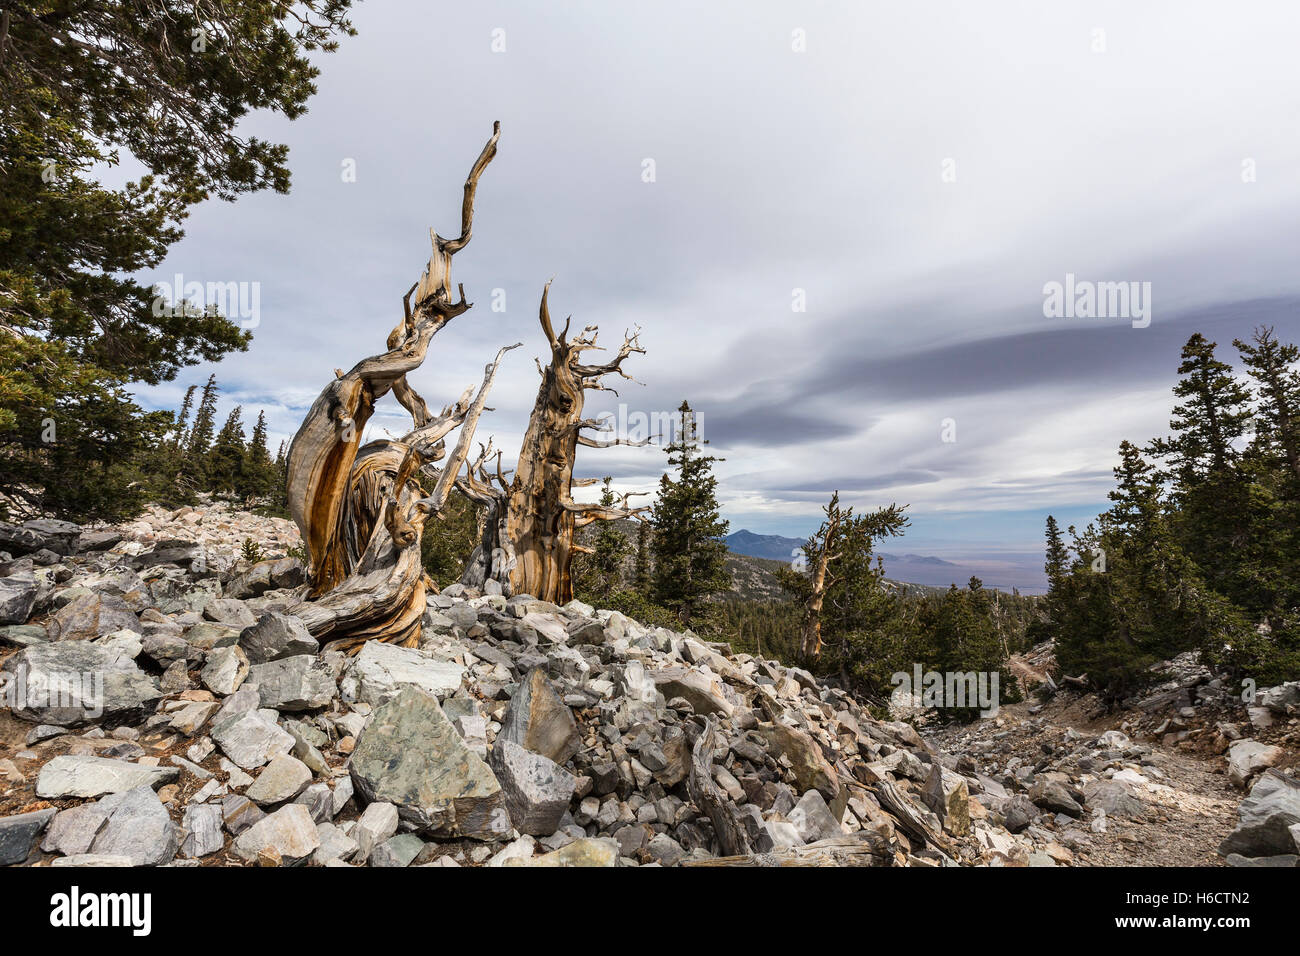 Bristlecone Pines in Great-Basin-Nationalpark im nördlichen Nevada.  Bristlecone Pines sind die ältesten Bäume der Welt. Stockfoto